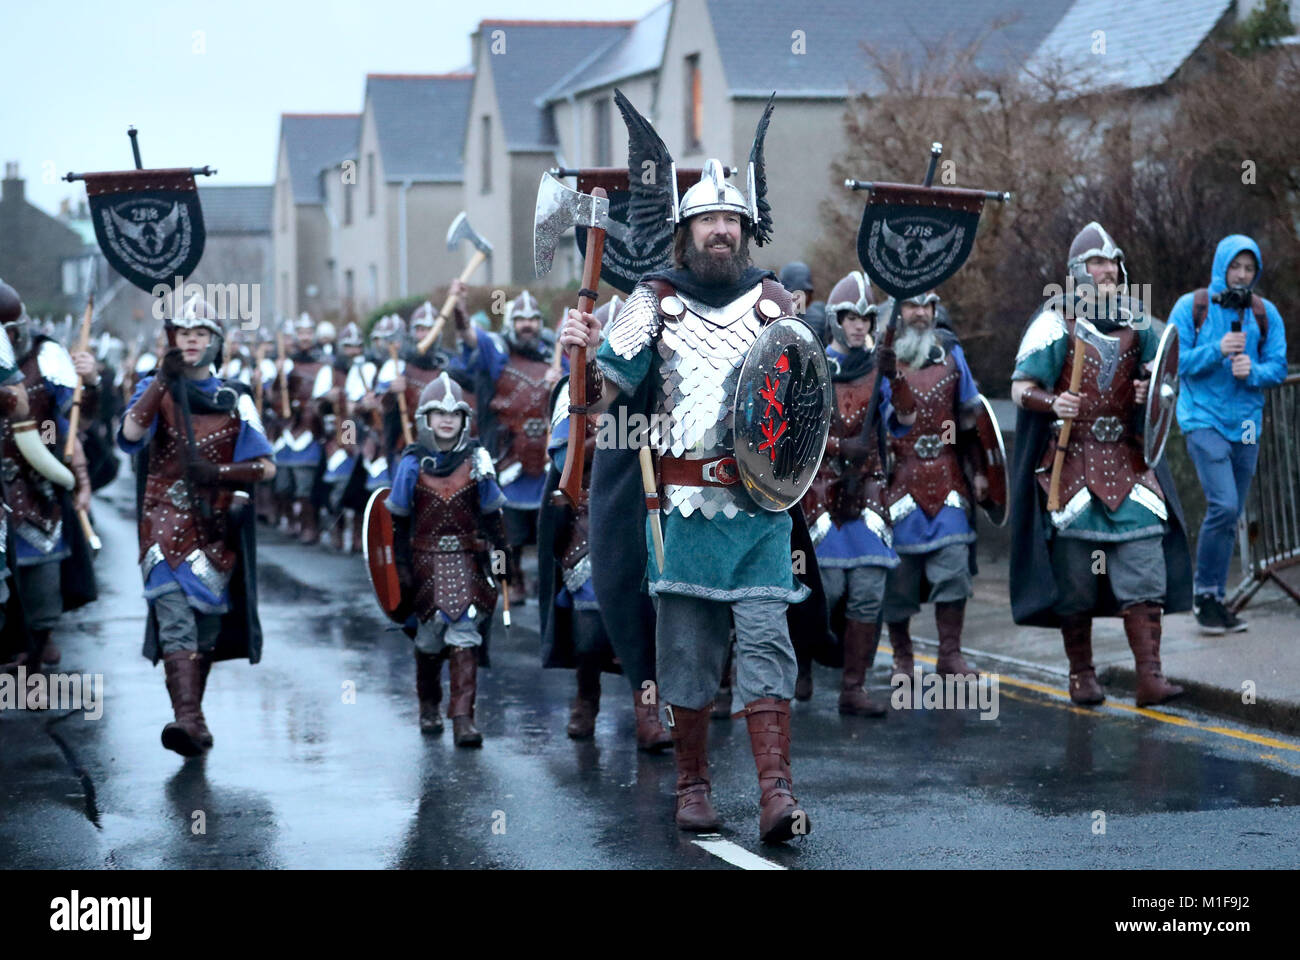 Les membres de l'équipe de Jarl vêtus de costumes Viking marche dans les rues de Lerwick sur les îles Shetland pendant le Festival Up Helly Aa Viking. Banque D'Images